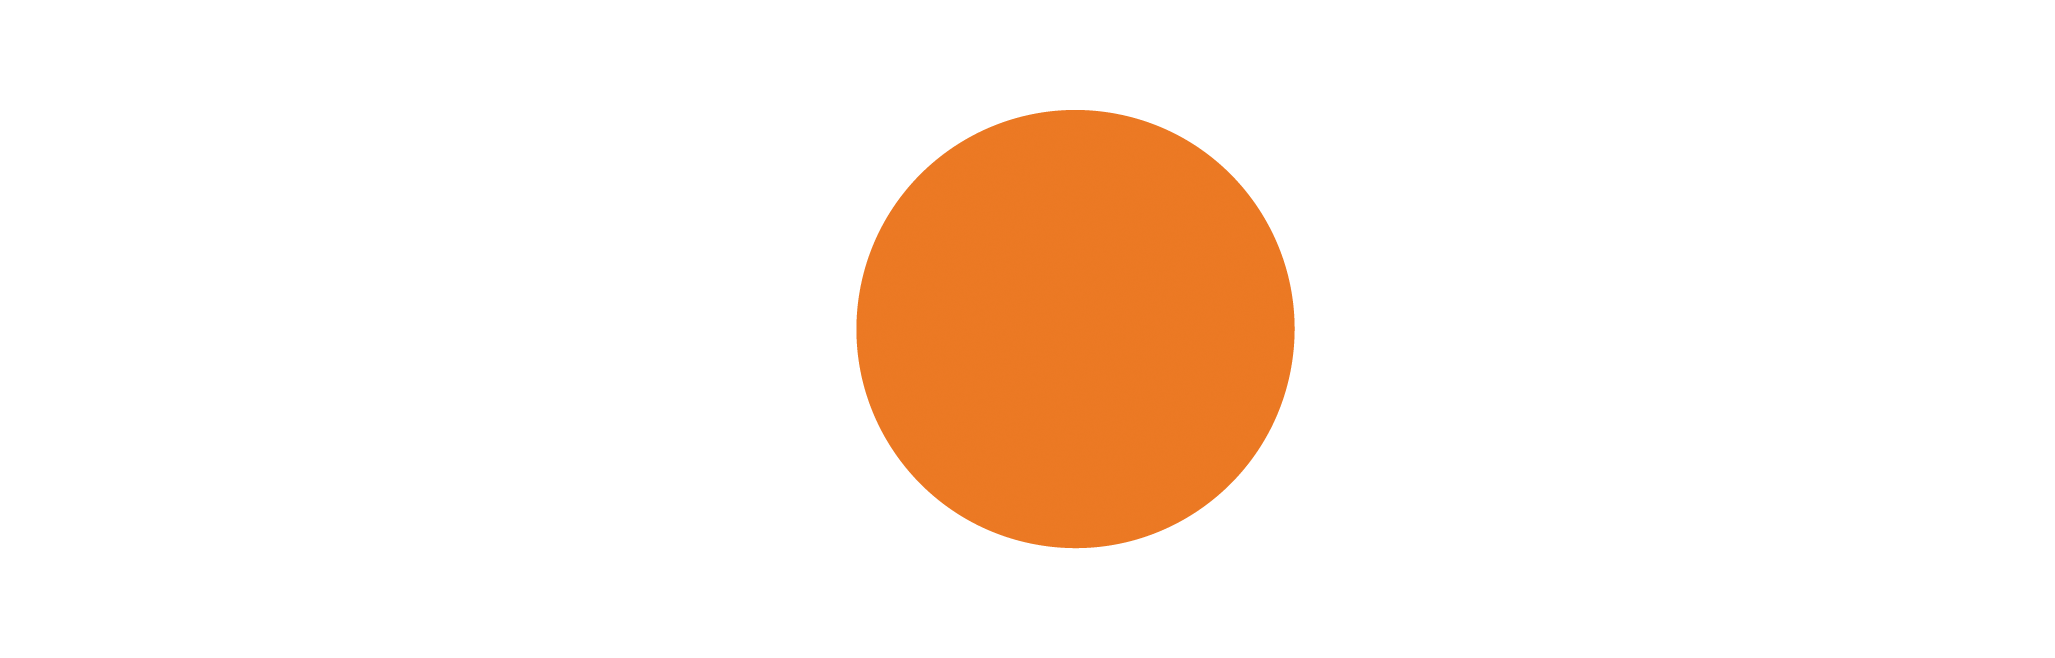 MOAI logo white variant on transparant background